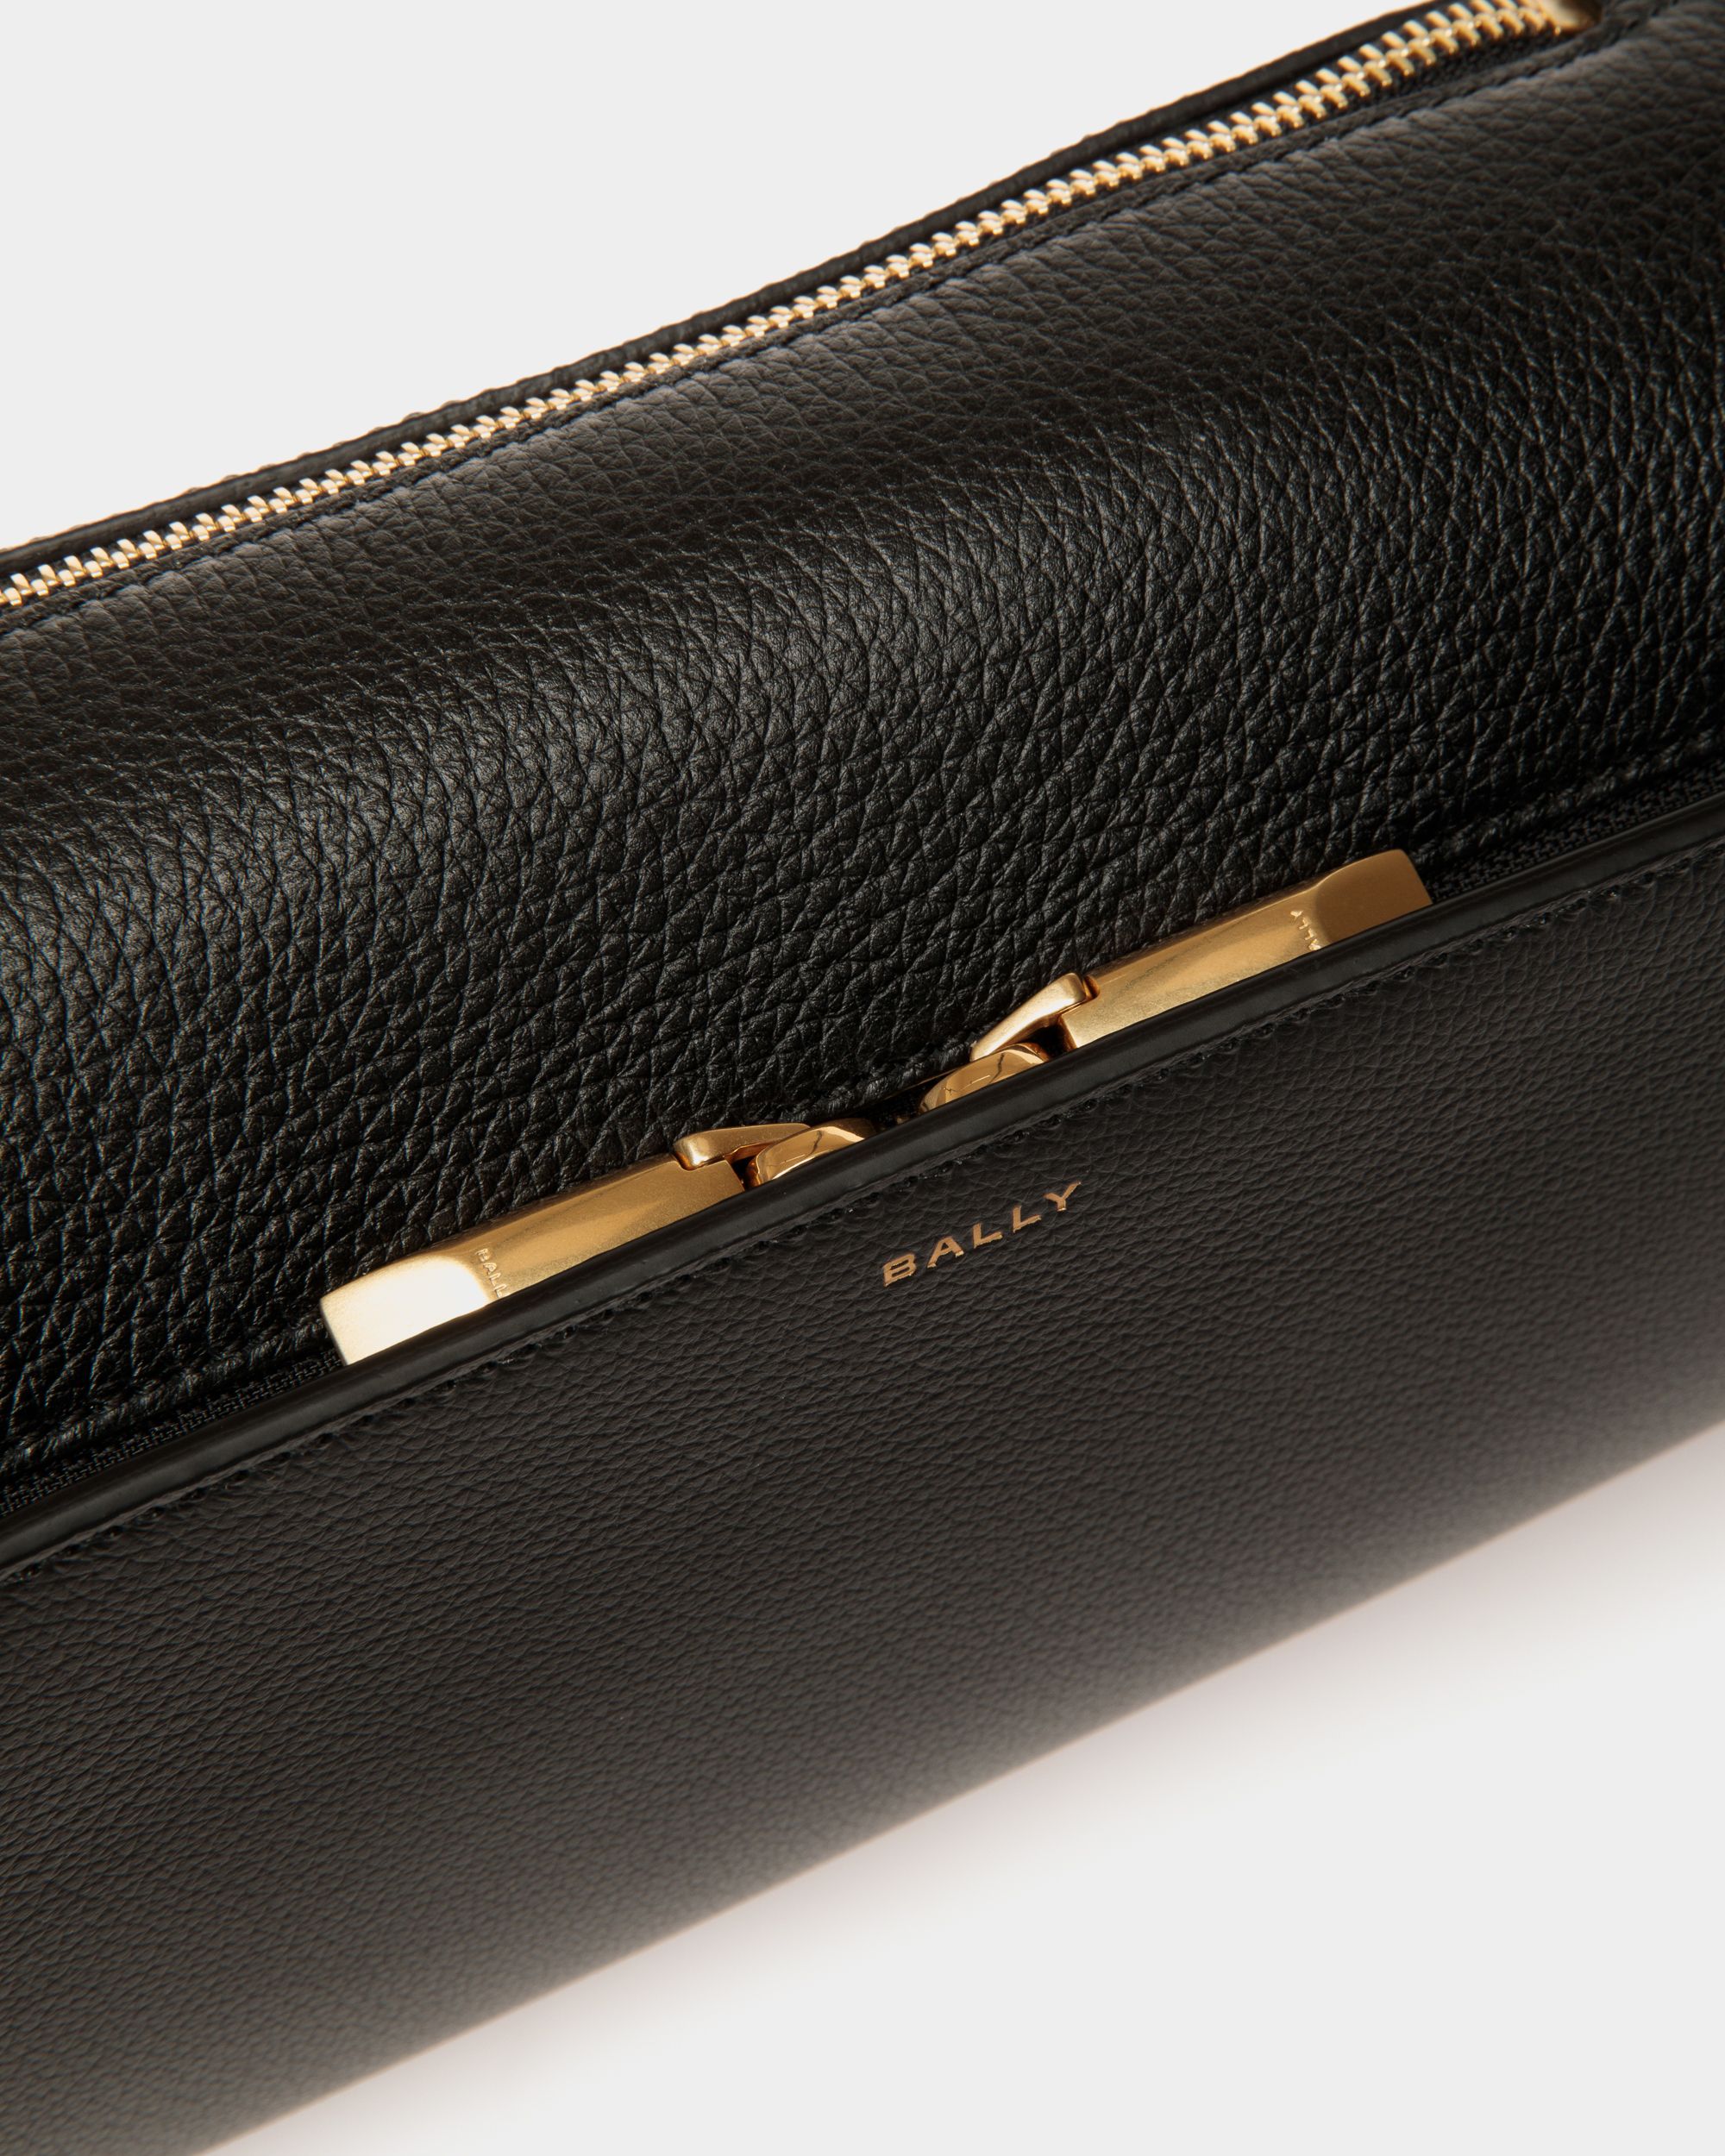 Arkle | Men's Belt Bag in Black Grained Leather | Bally | Still Life Detail